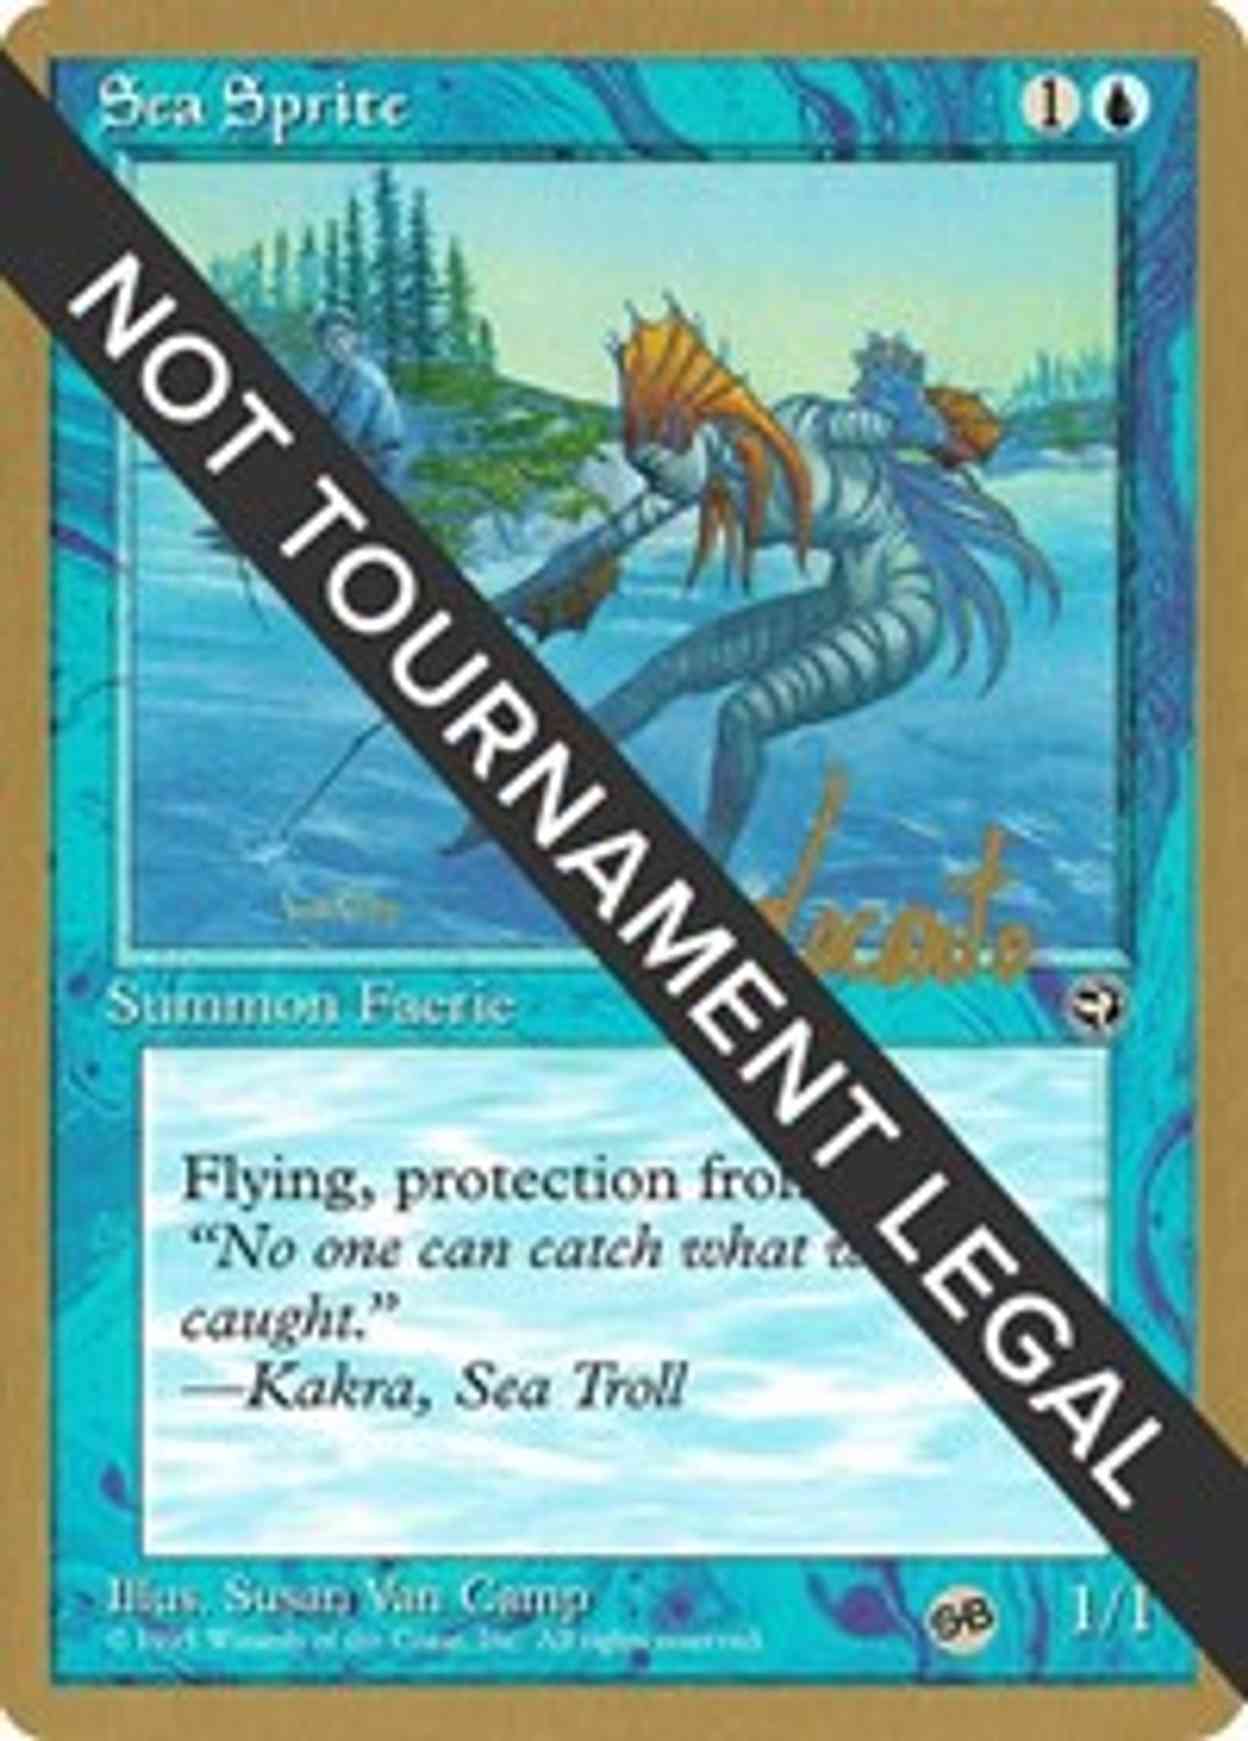 Sea Sprite - 1996 Michael Loconto (HML) (SB) magic card front